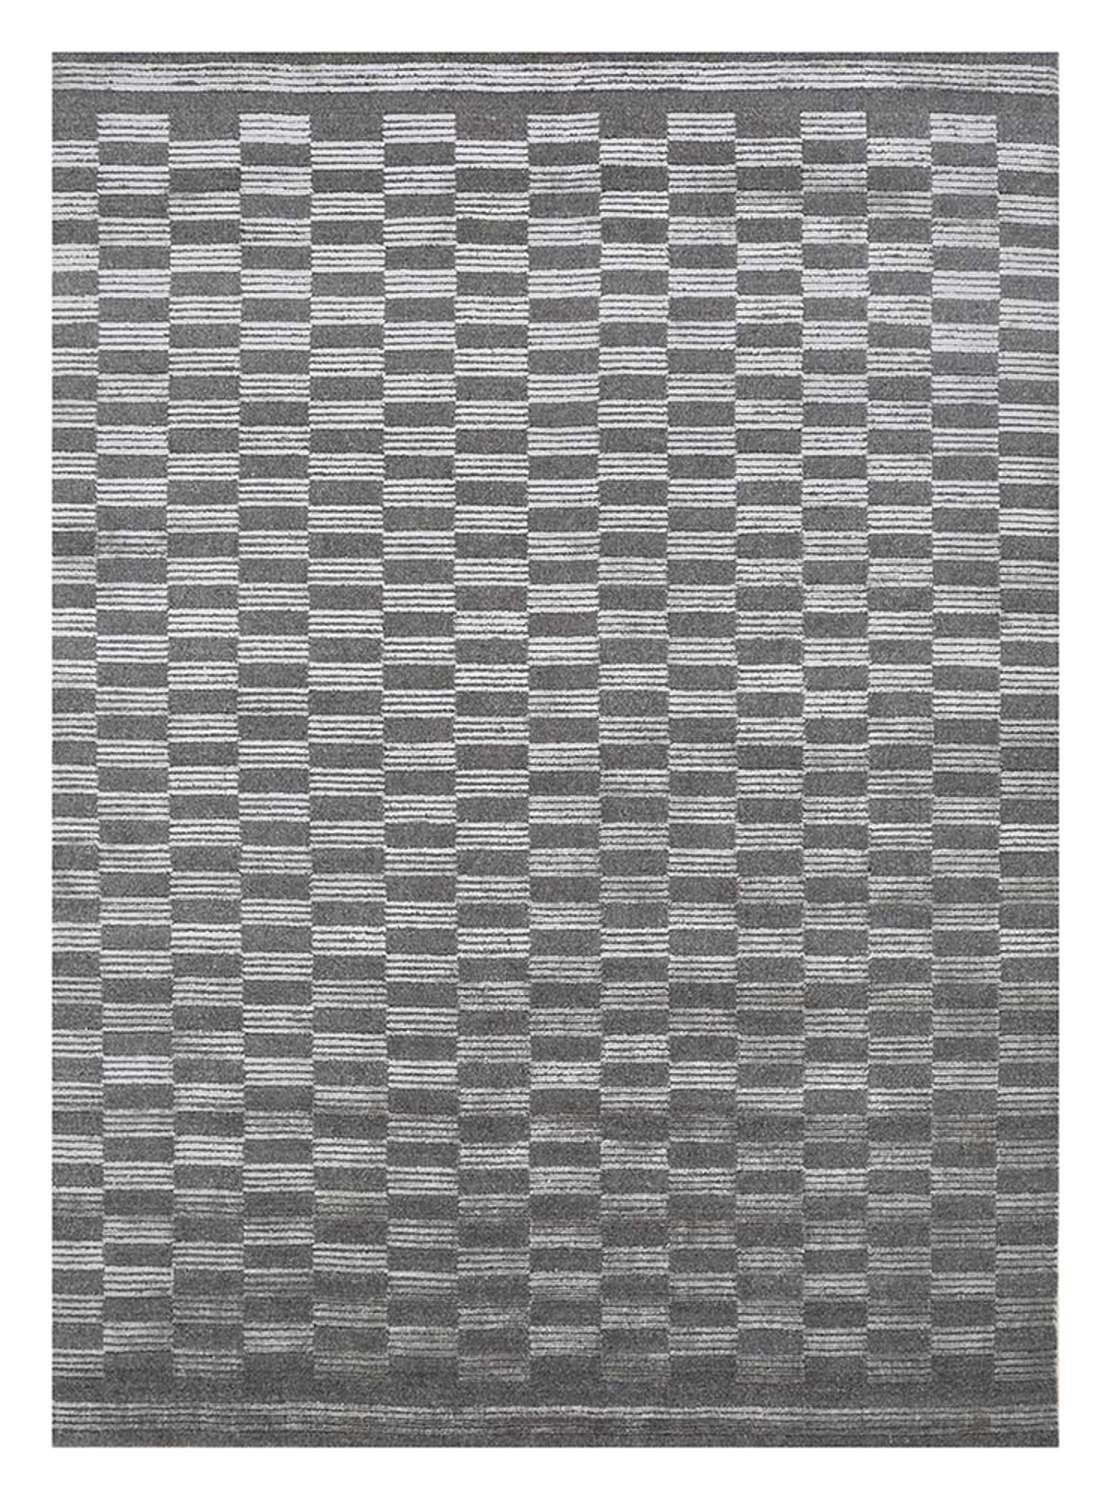 Teppich - 300 x 240 cm - schwarz-weiß